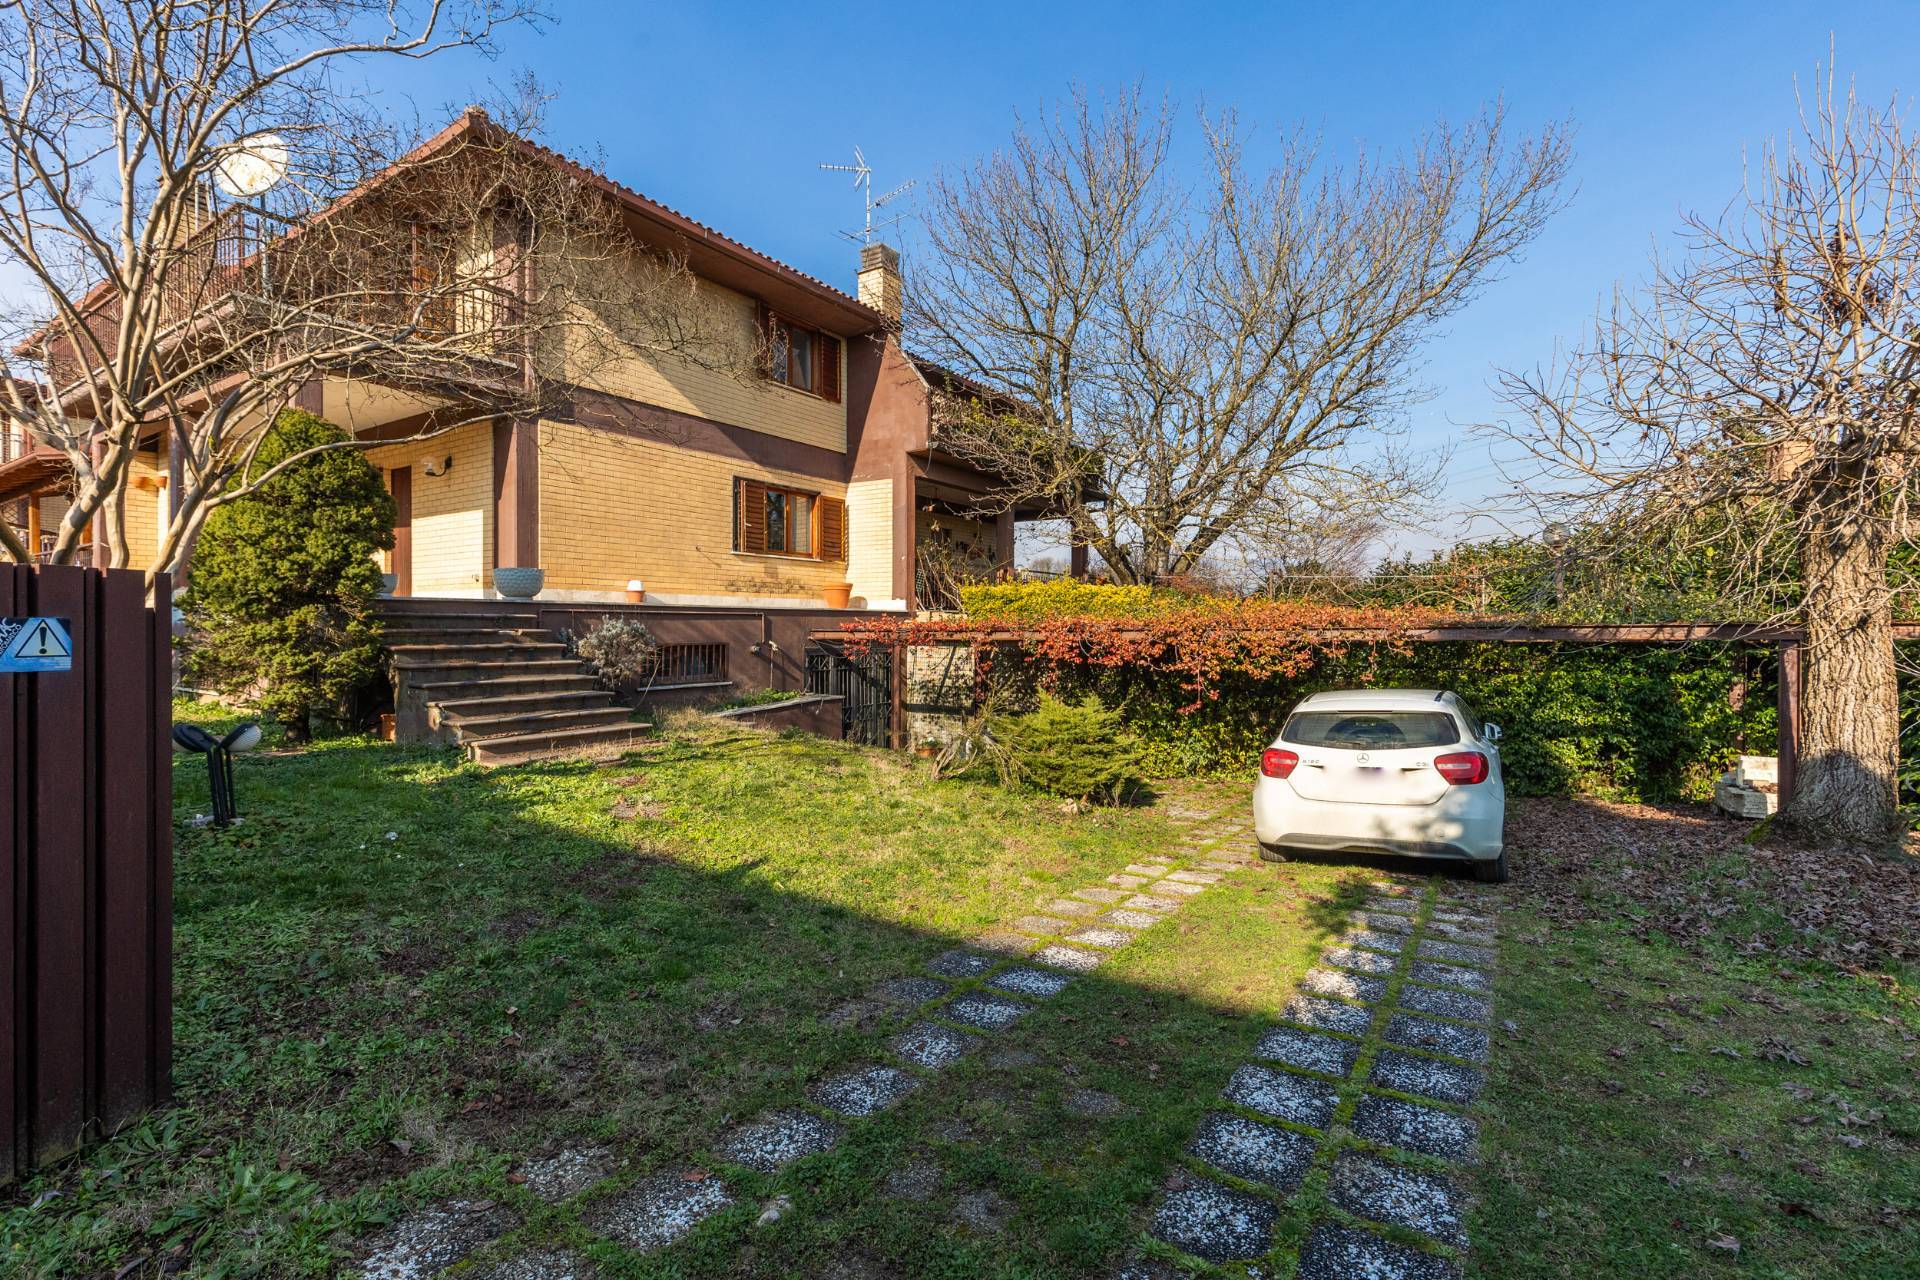 Villa in vendita a Labico, 6 locali, prezzo € 229.000 | PortaleAgenzieImmobiliari.it